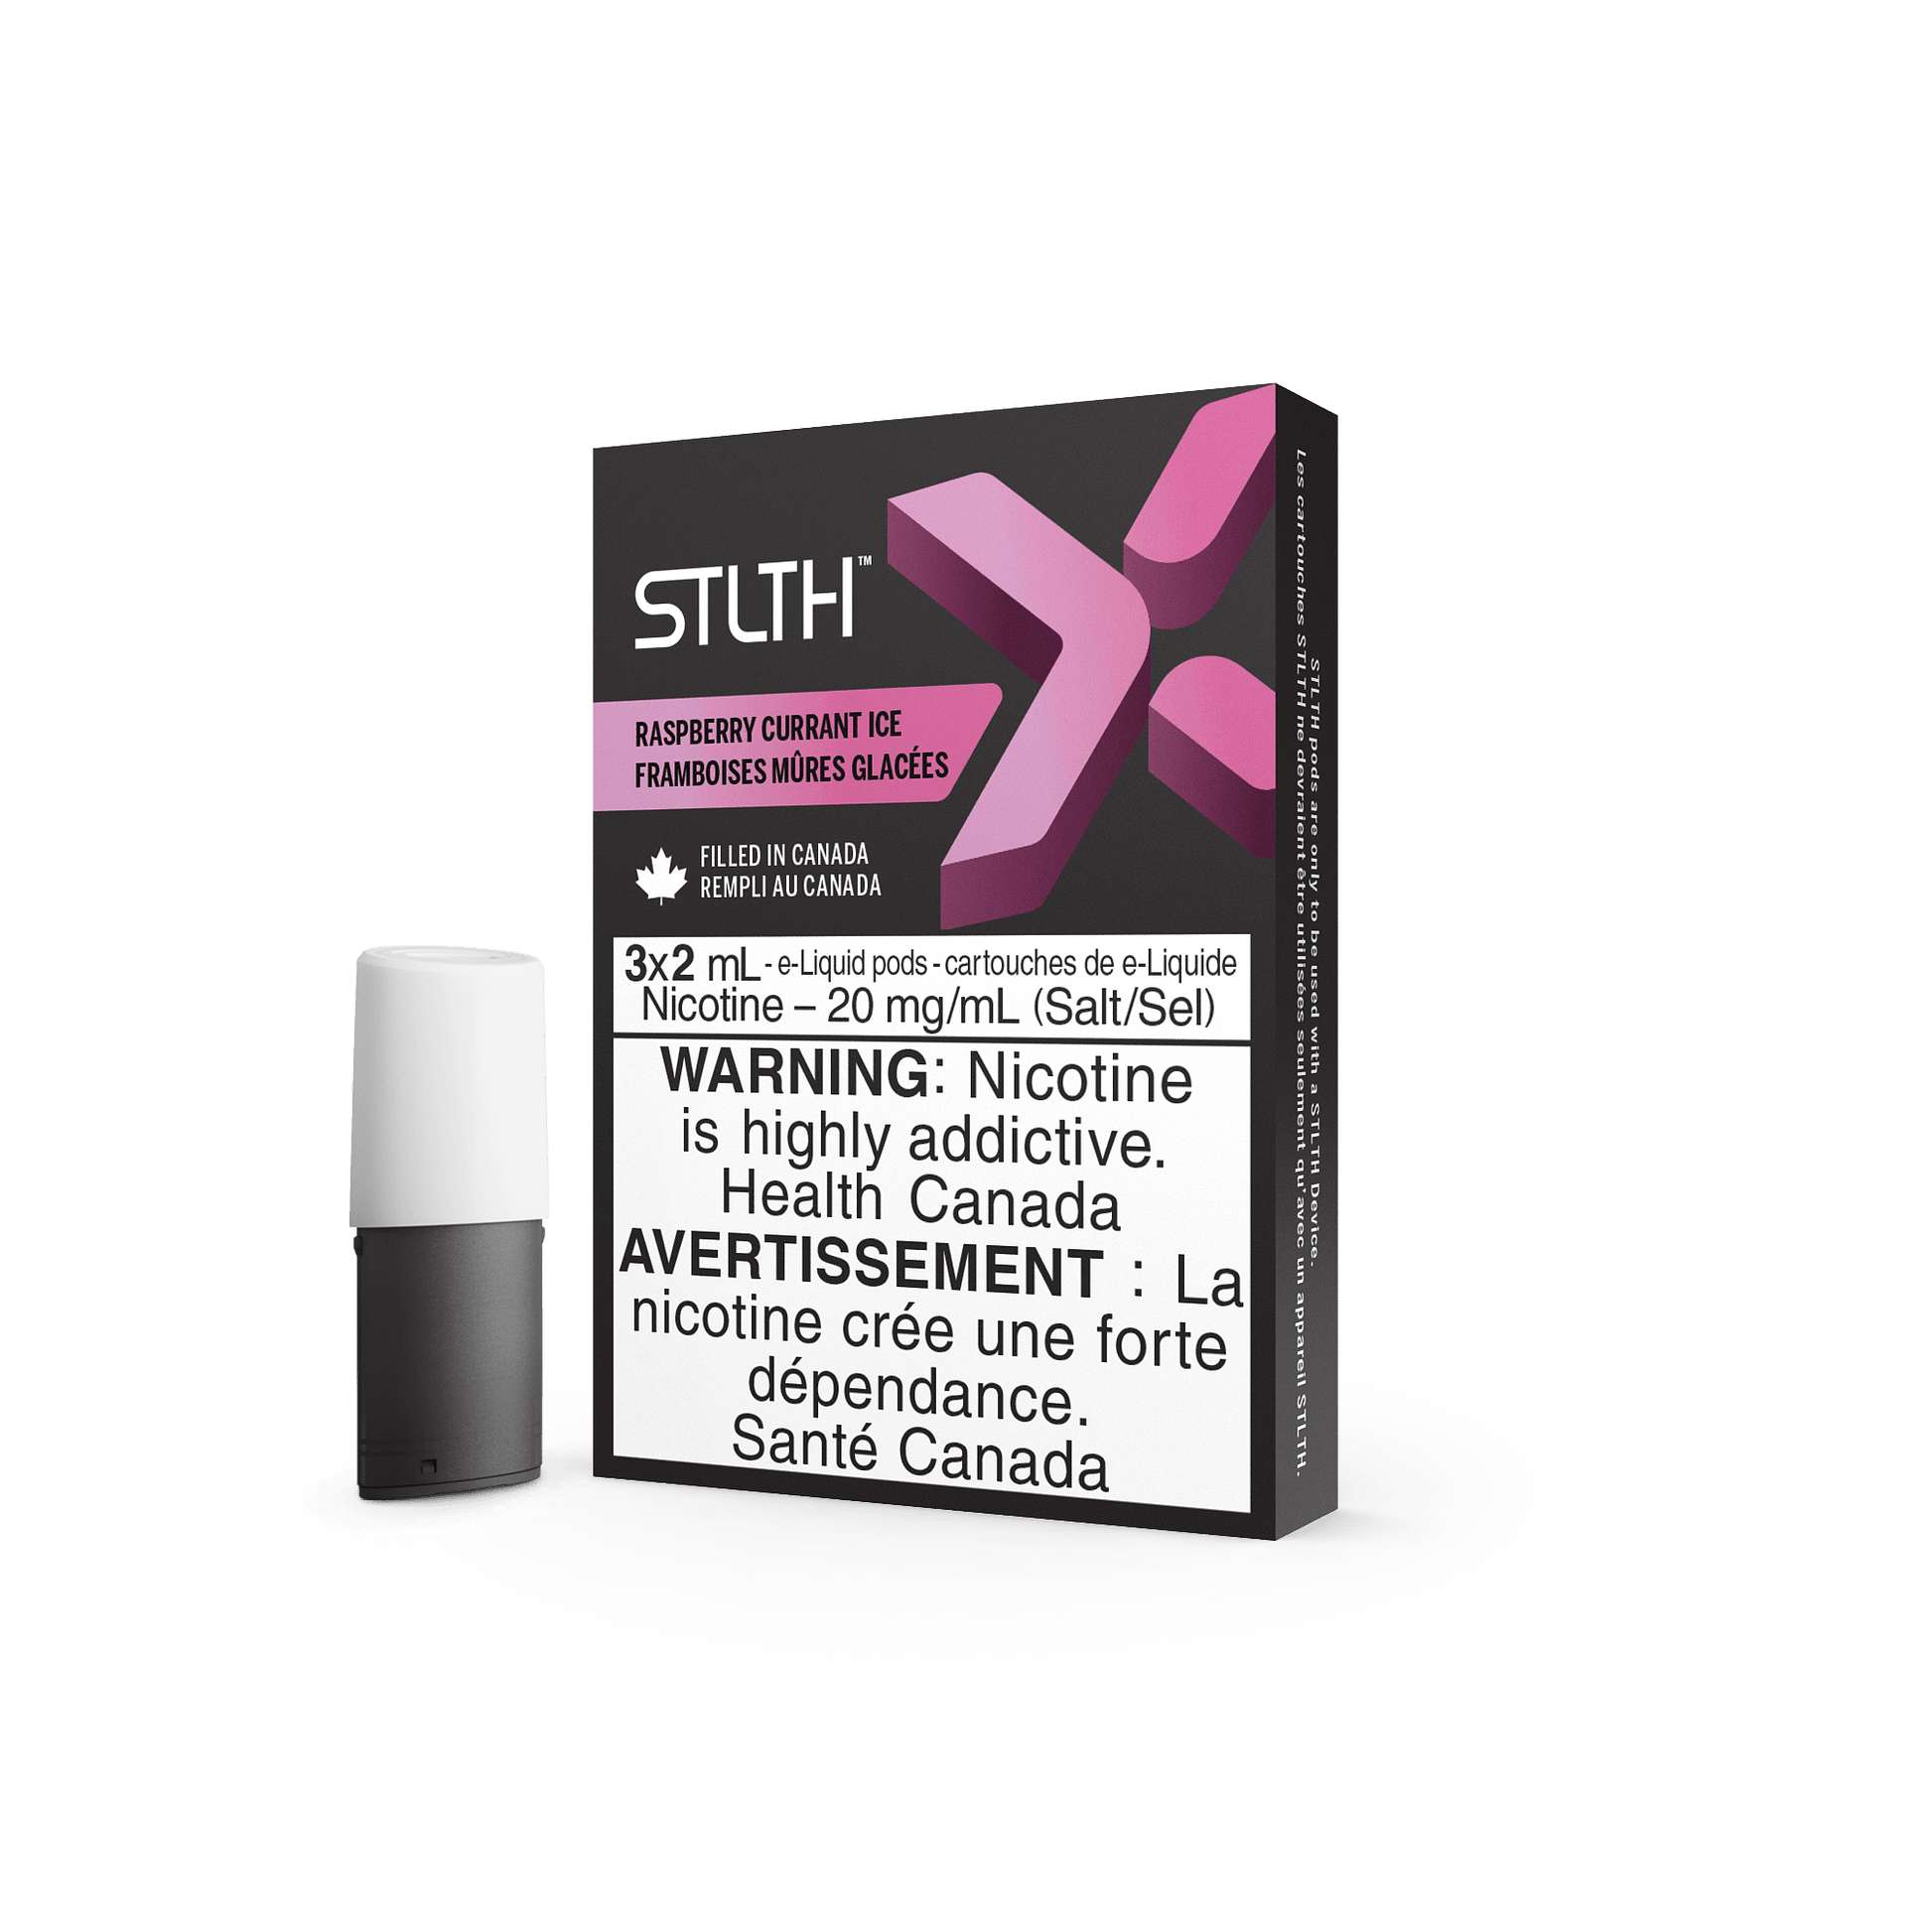 STLTH X - Raspberry Currant Ice - Vapor Shoppe